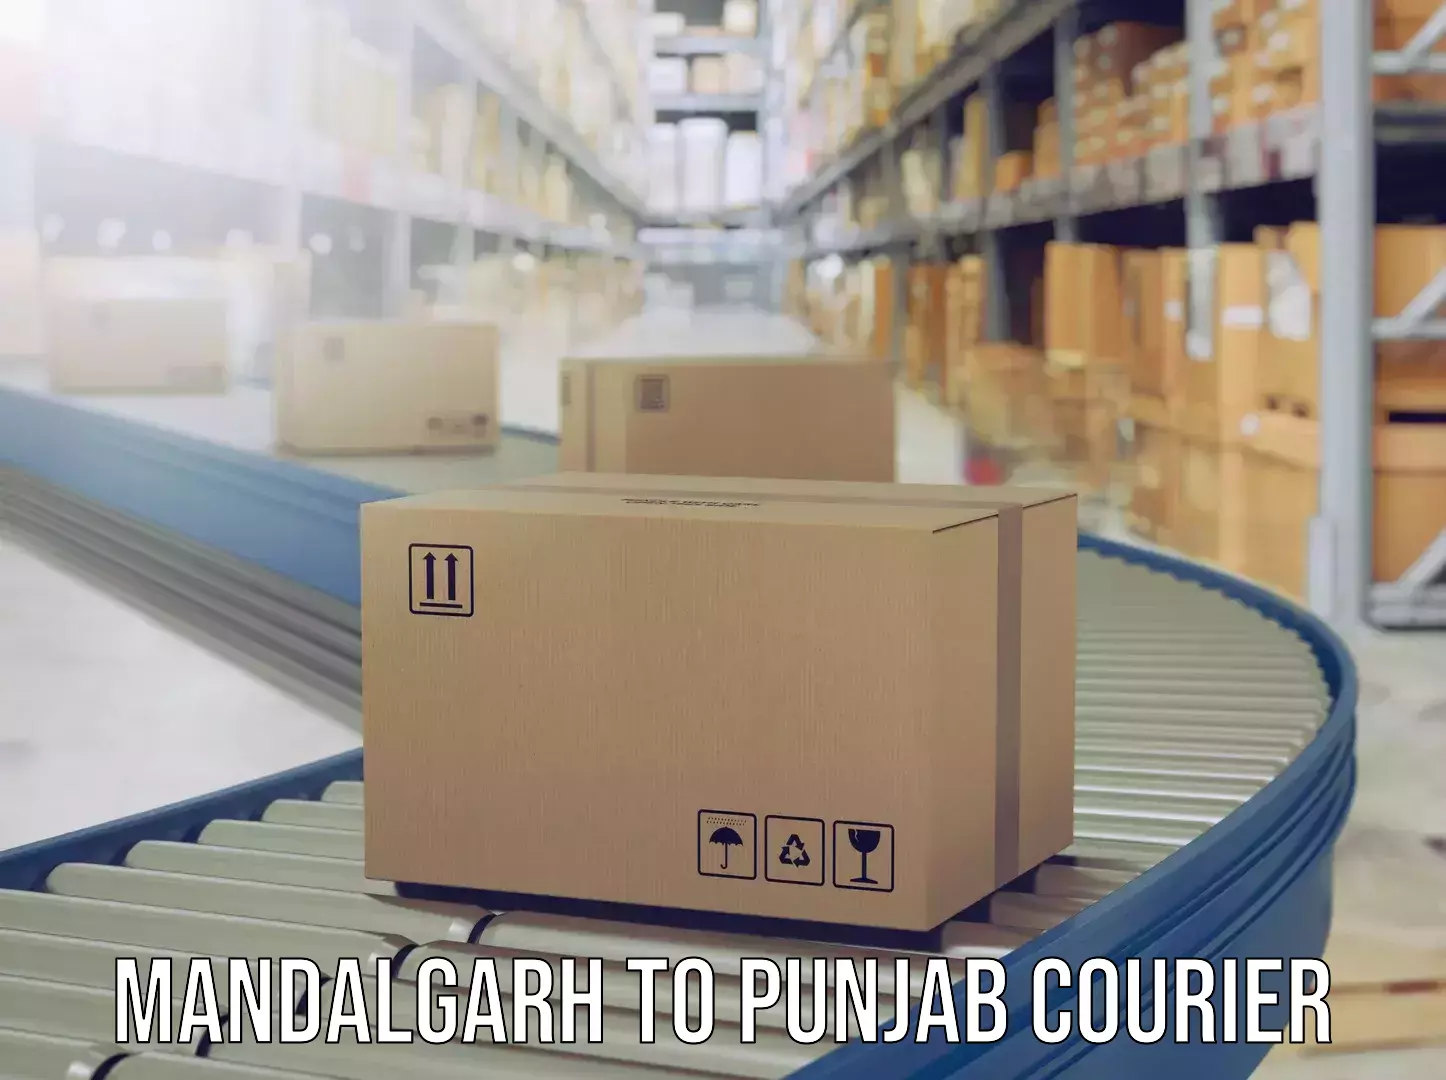 Door-to-door baggage service in Mandalgarh to Punjab